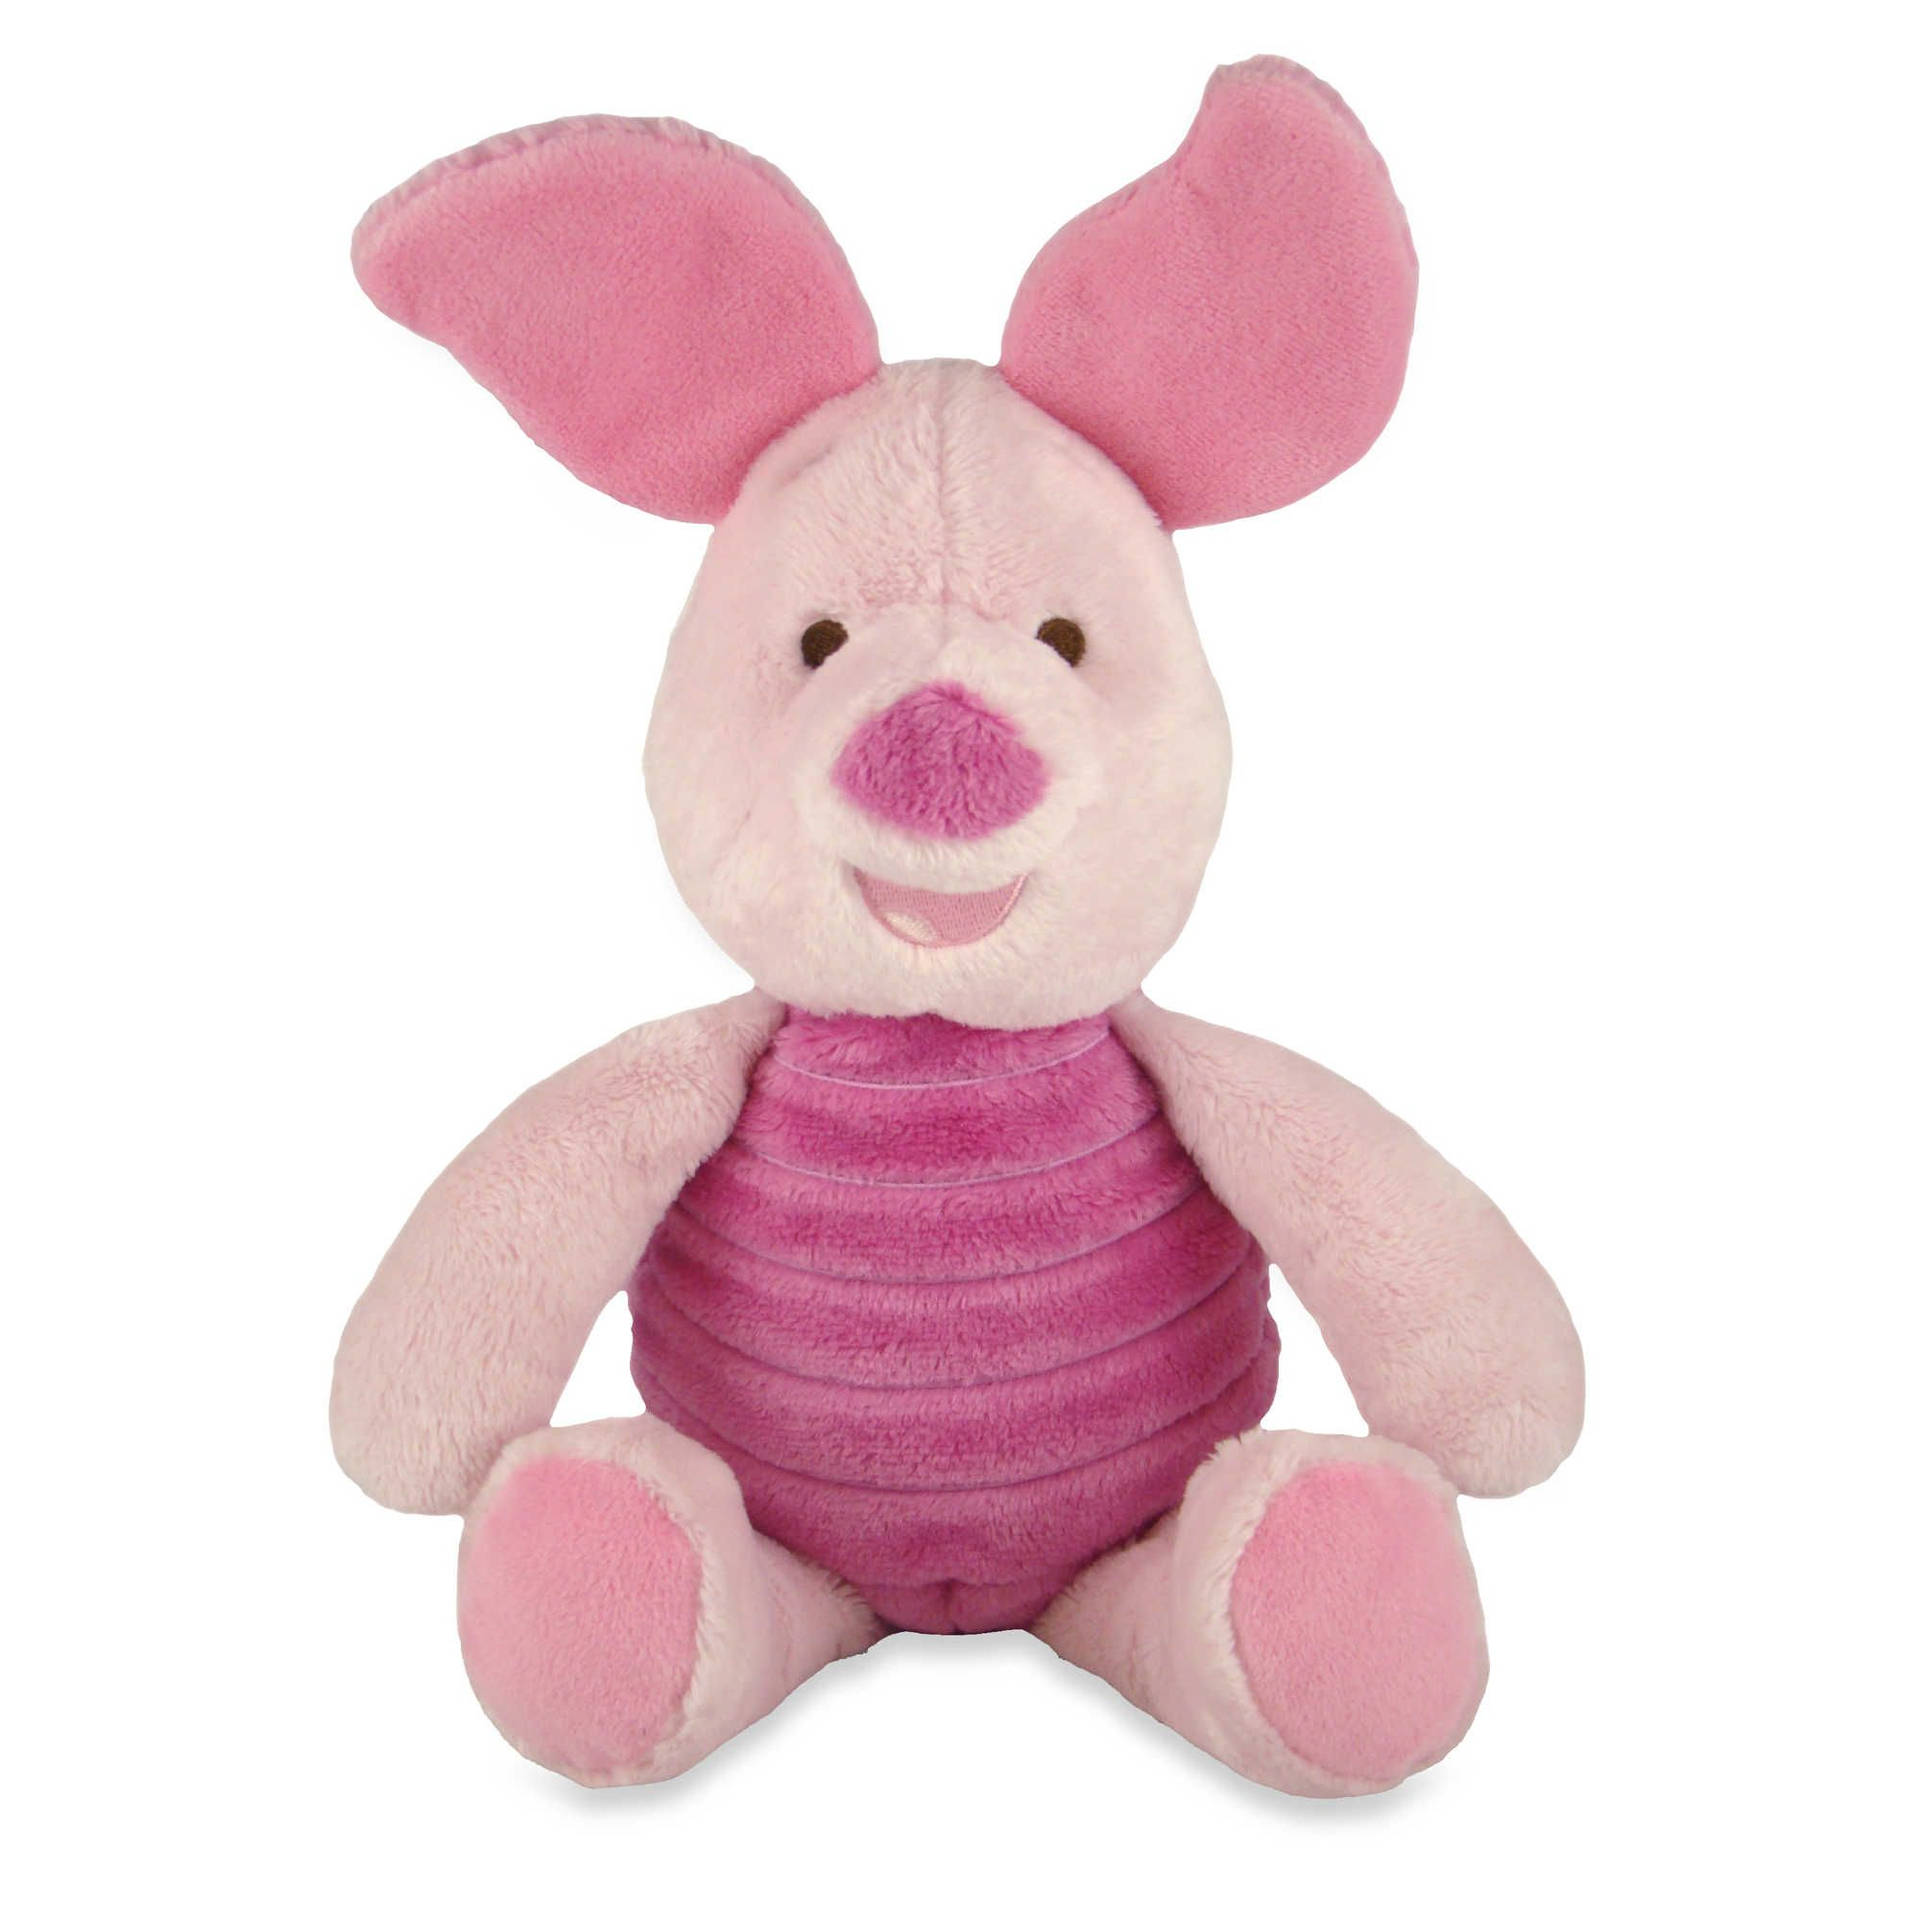 Piglet Smiling Toy